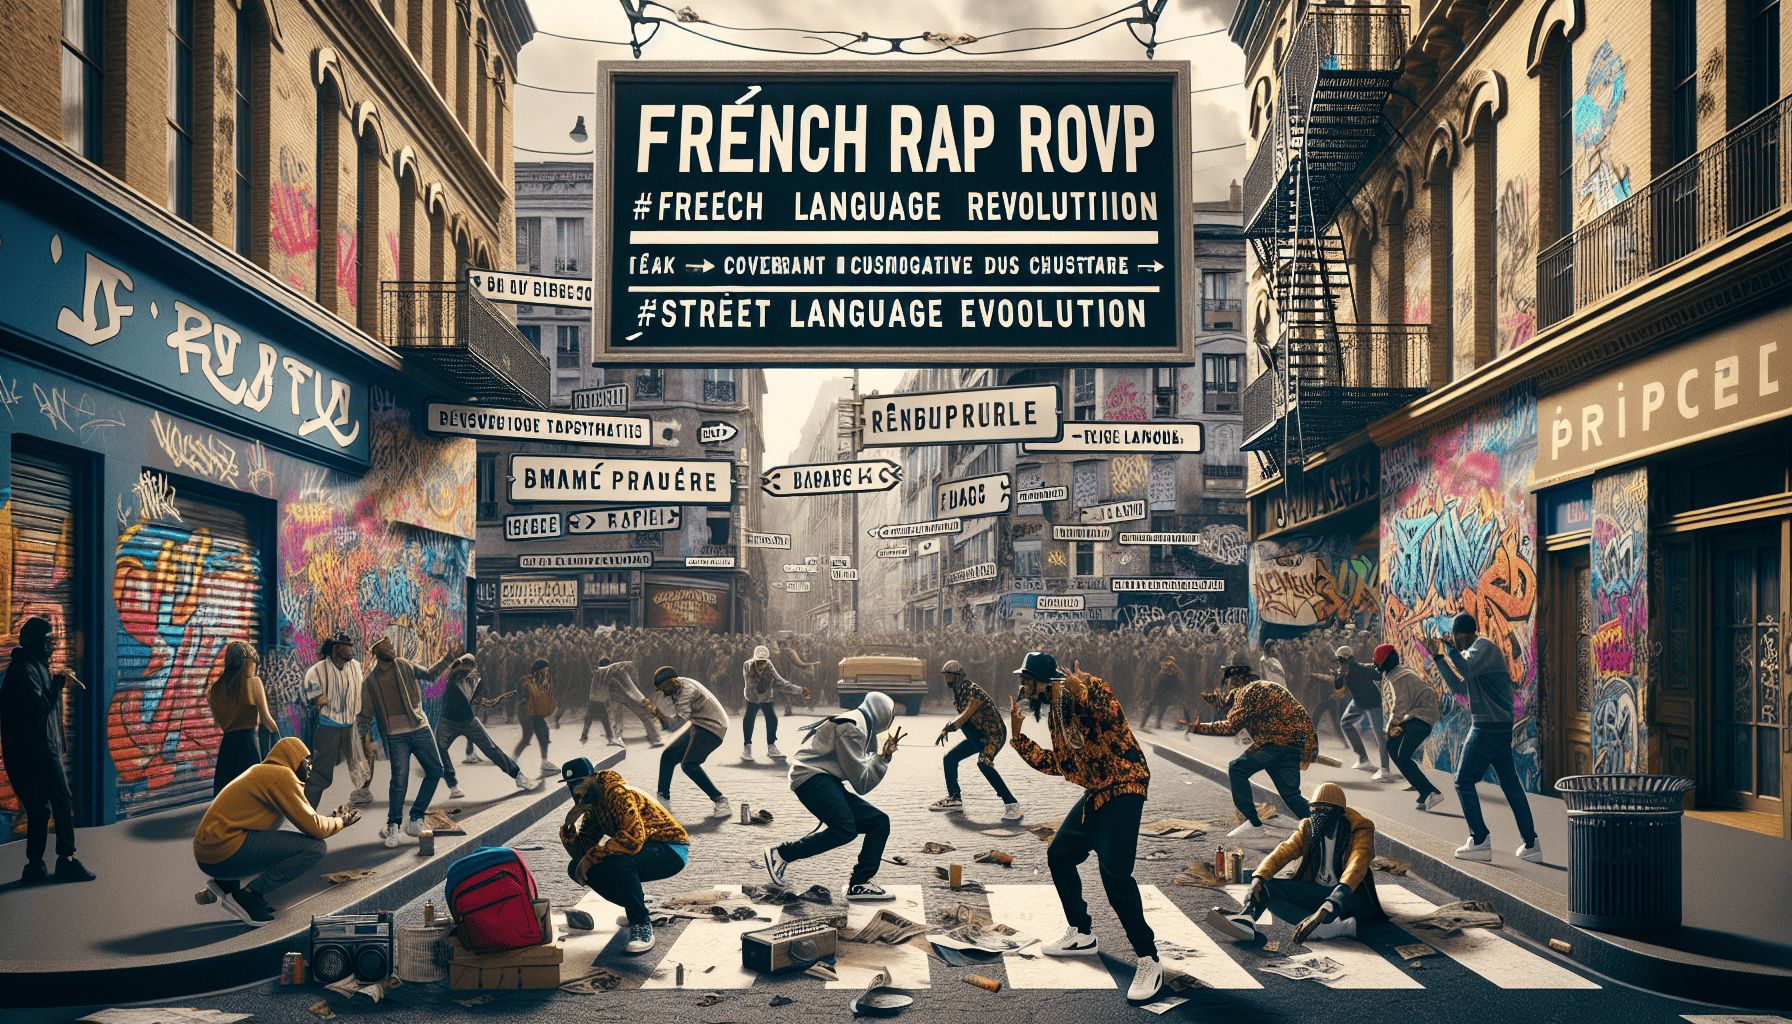 découvrez comment le rap français révolutionne le langage des rues à travers une exploration passionnante de ses racines, de son impact culturel et de son évolution influente.